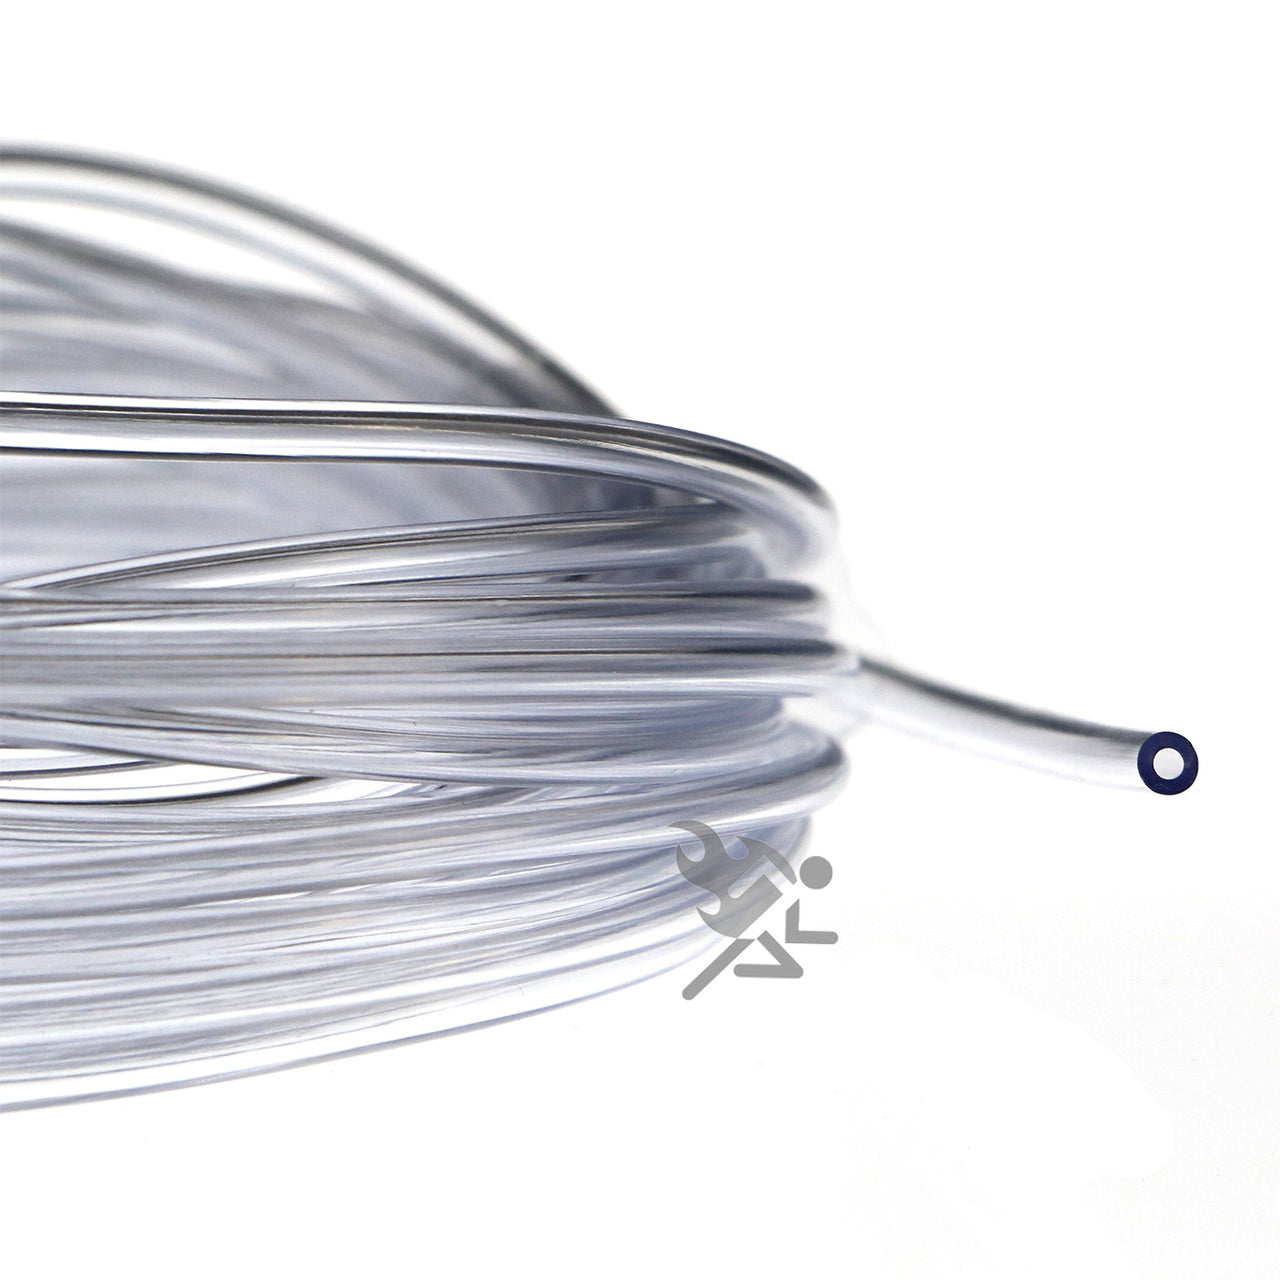 1/16 I.D. Clear Flexible Vinyl Tubing for Fish Hook Protectors